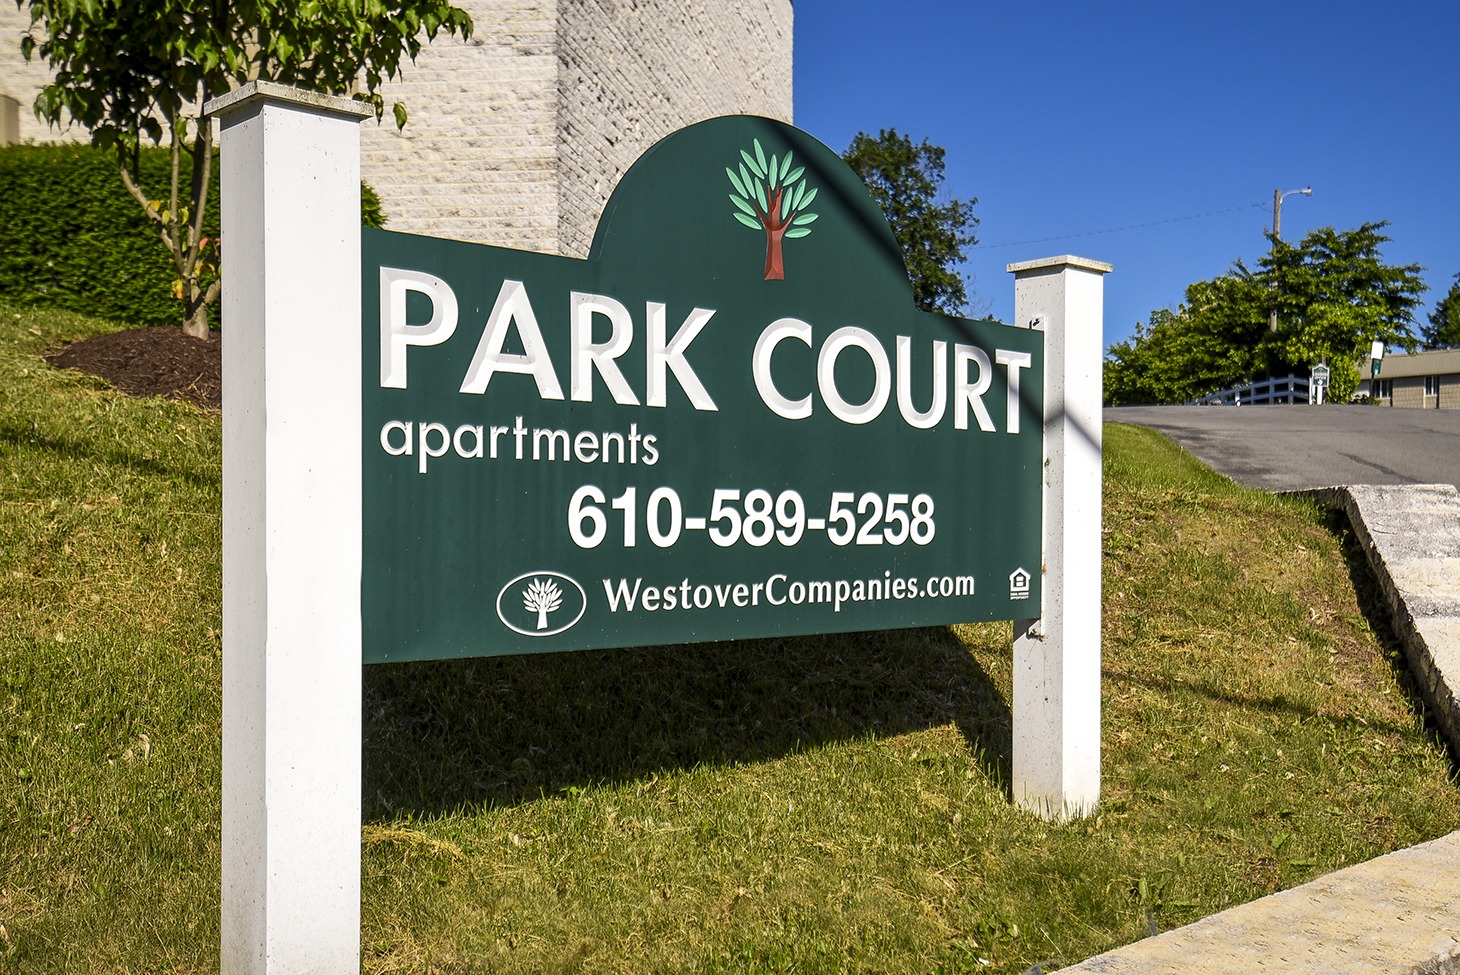 Park Court apartments sign close up